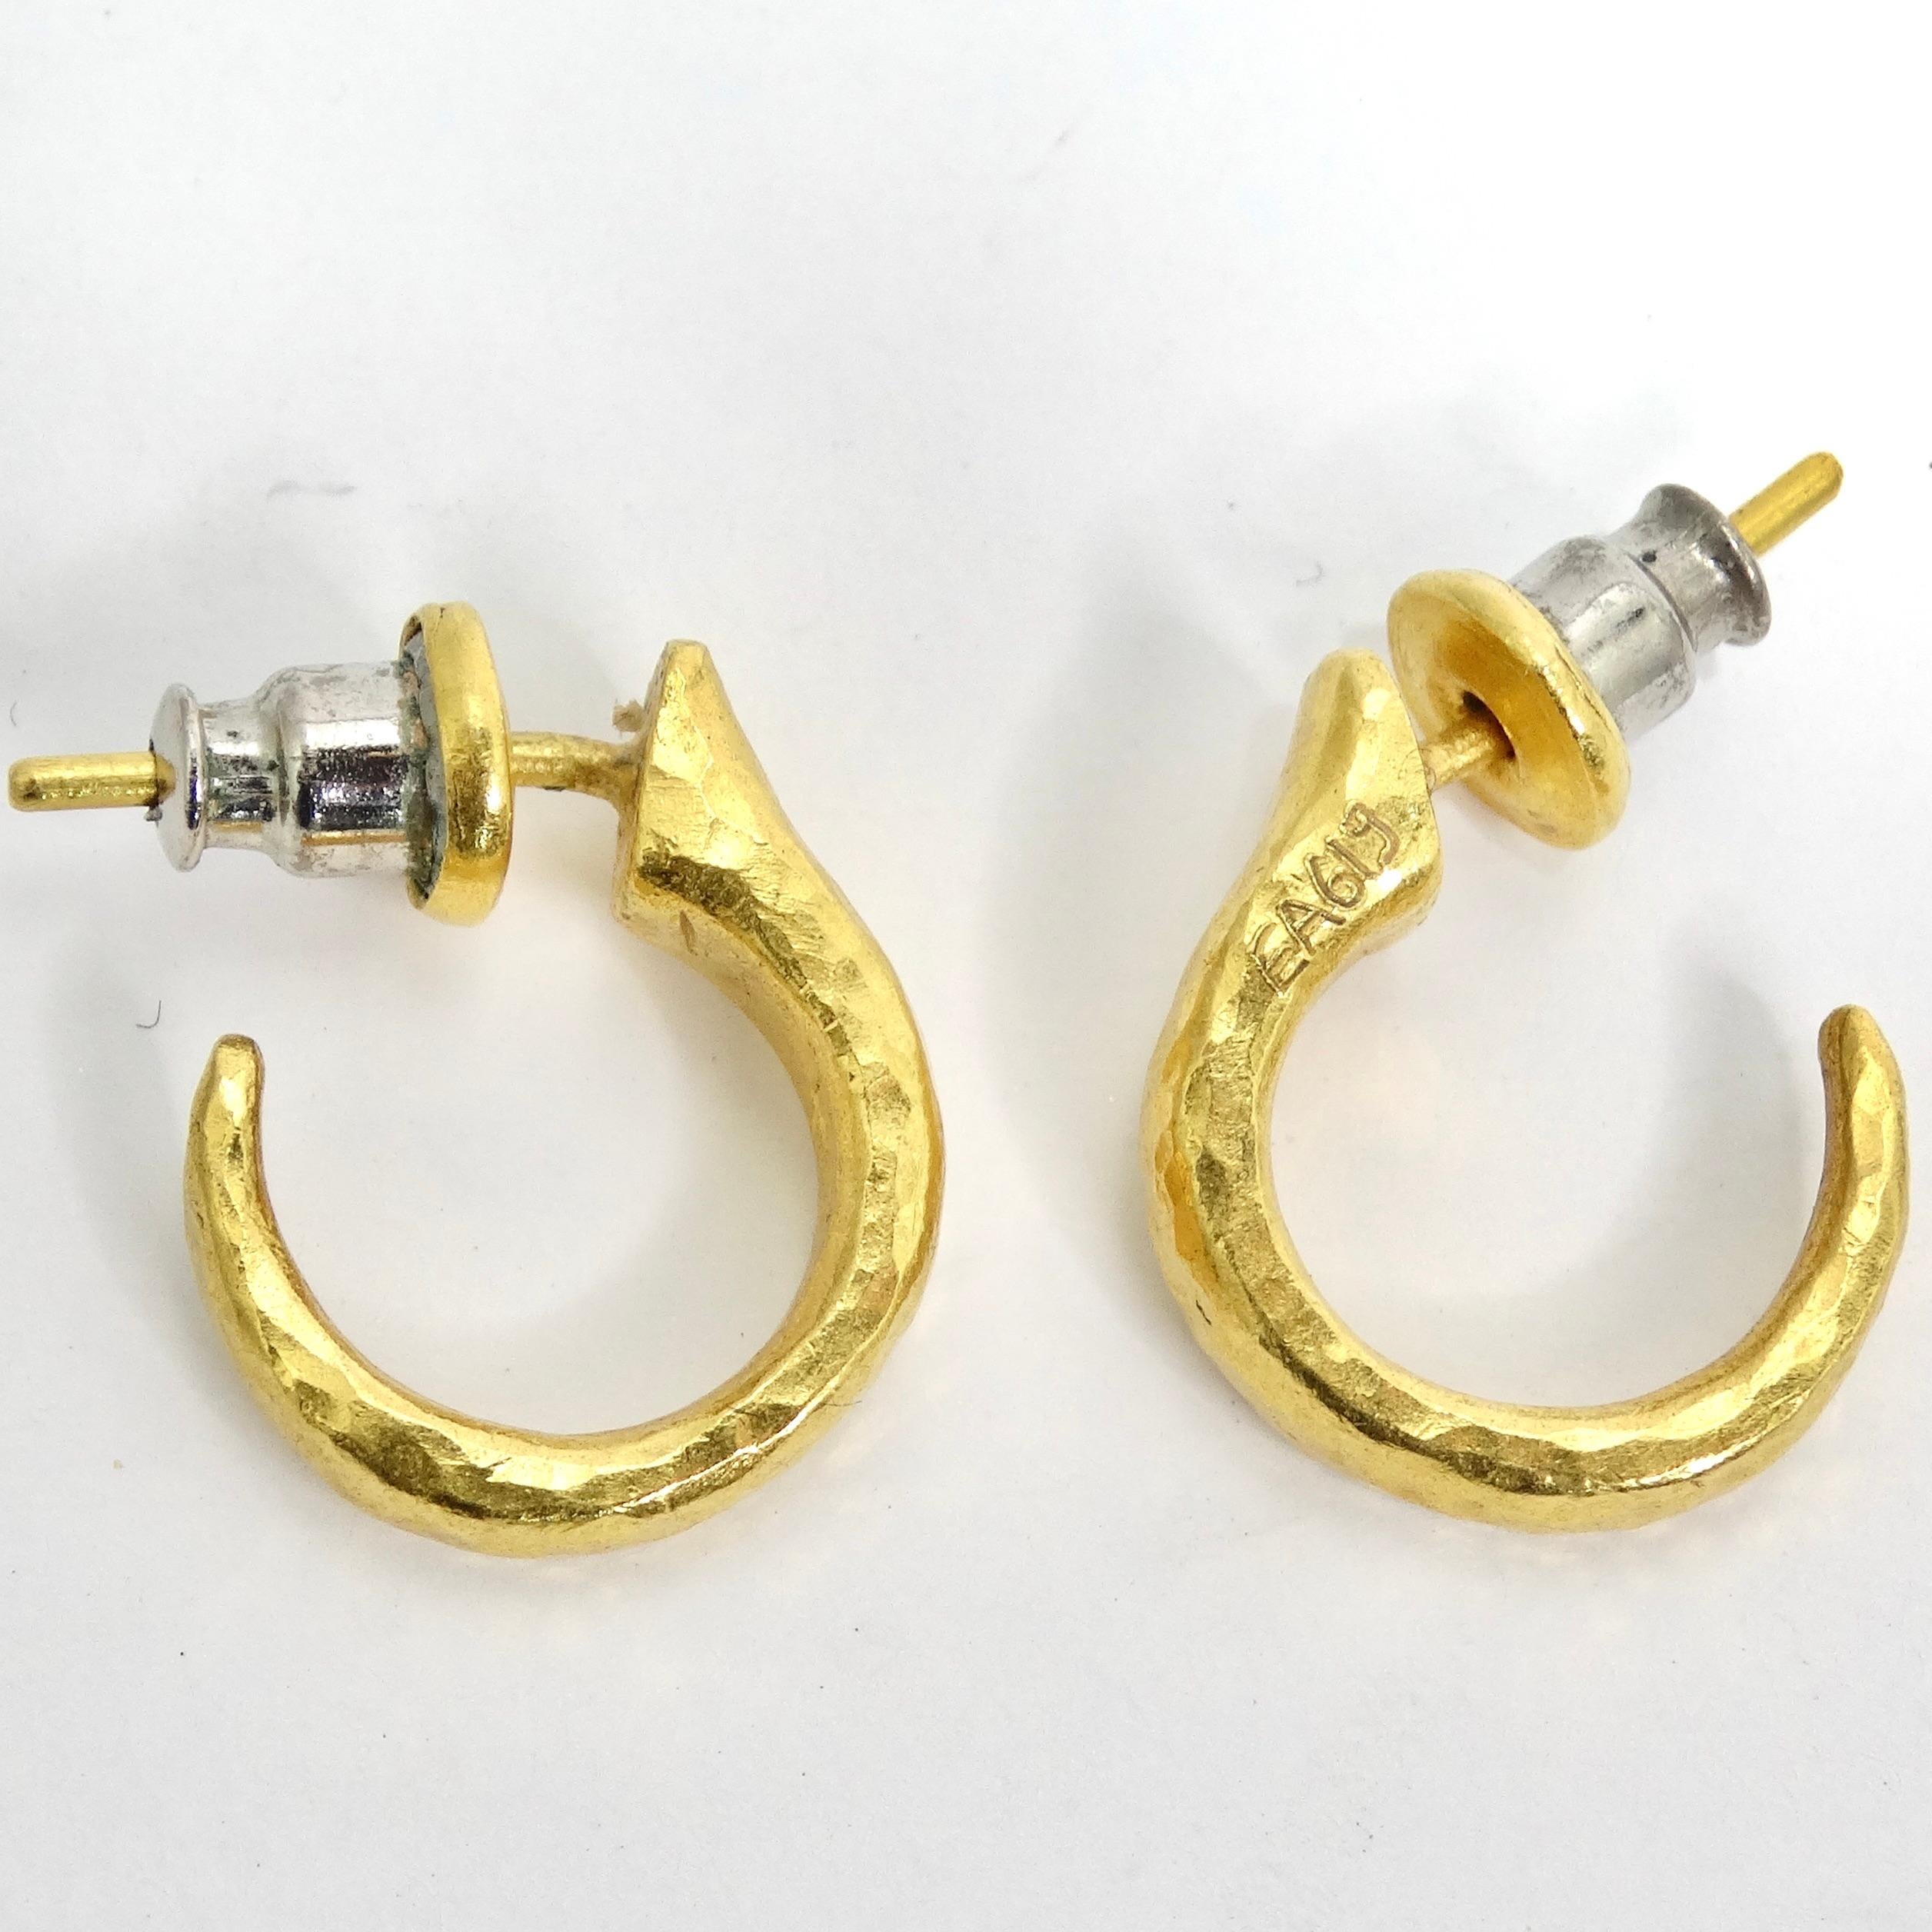 Die Gurhan 24k Gold Thor Hoop Earrings sind ein klassisches und zeitloses Paar, das Eleganz und Schlichtheit mühelos miteinander verbindet. Diese Mini-Reifenohrringe sind sorgfältig verarbeitet und bestehen aus Sterling Silber, das mit 24 Karat Gold